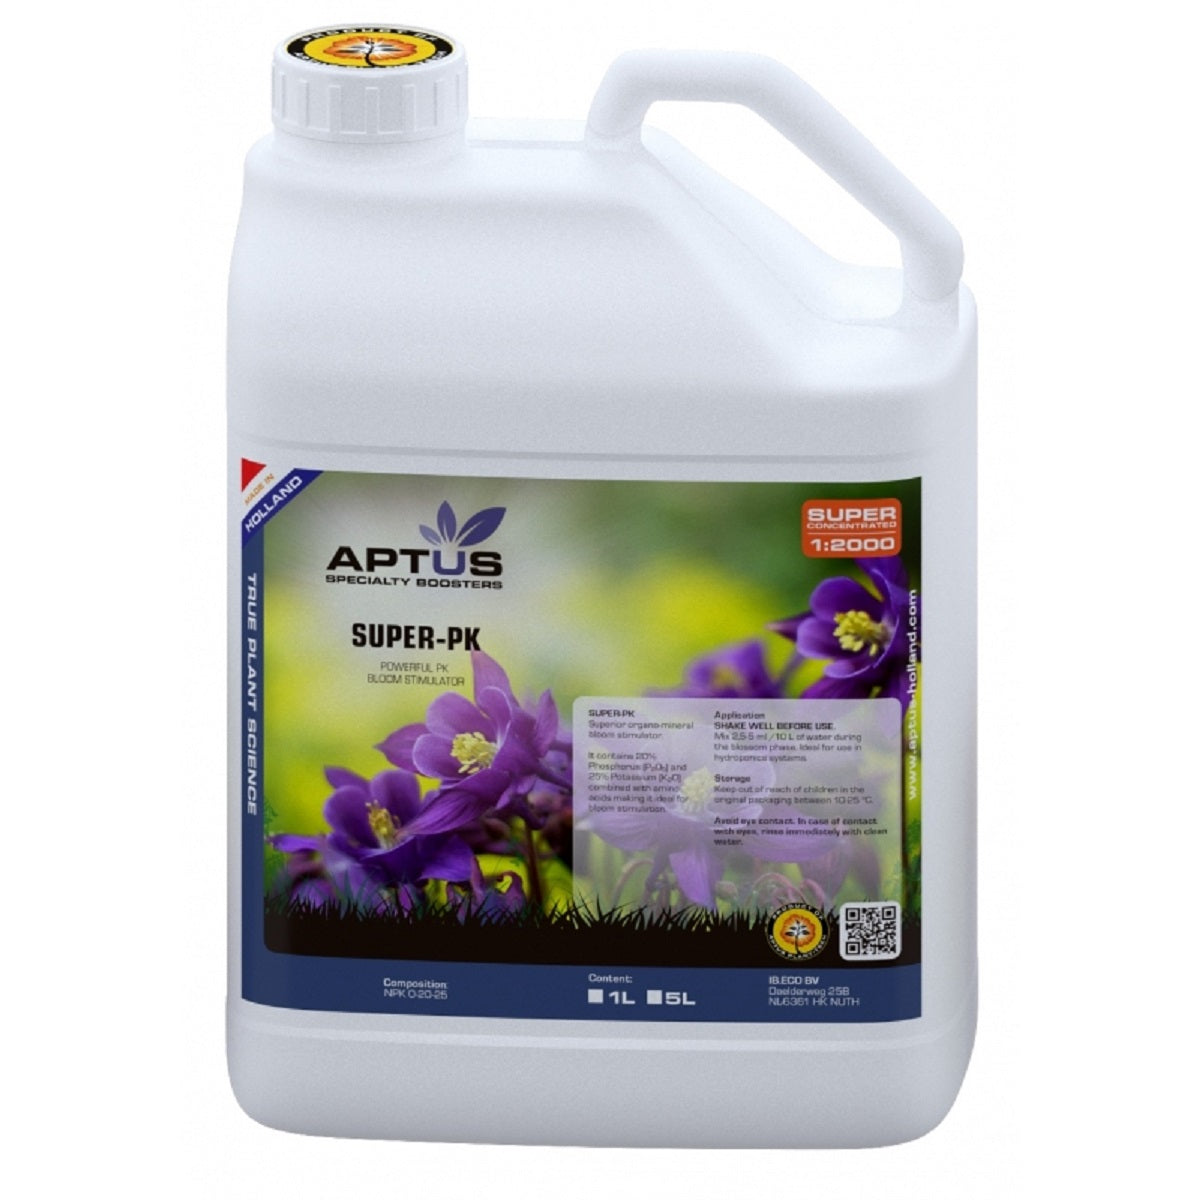 Booster de floraison Aptus Super-PK 5 litres